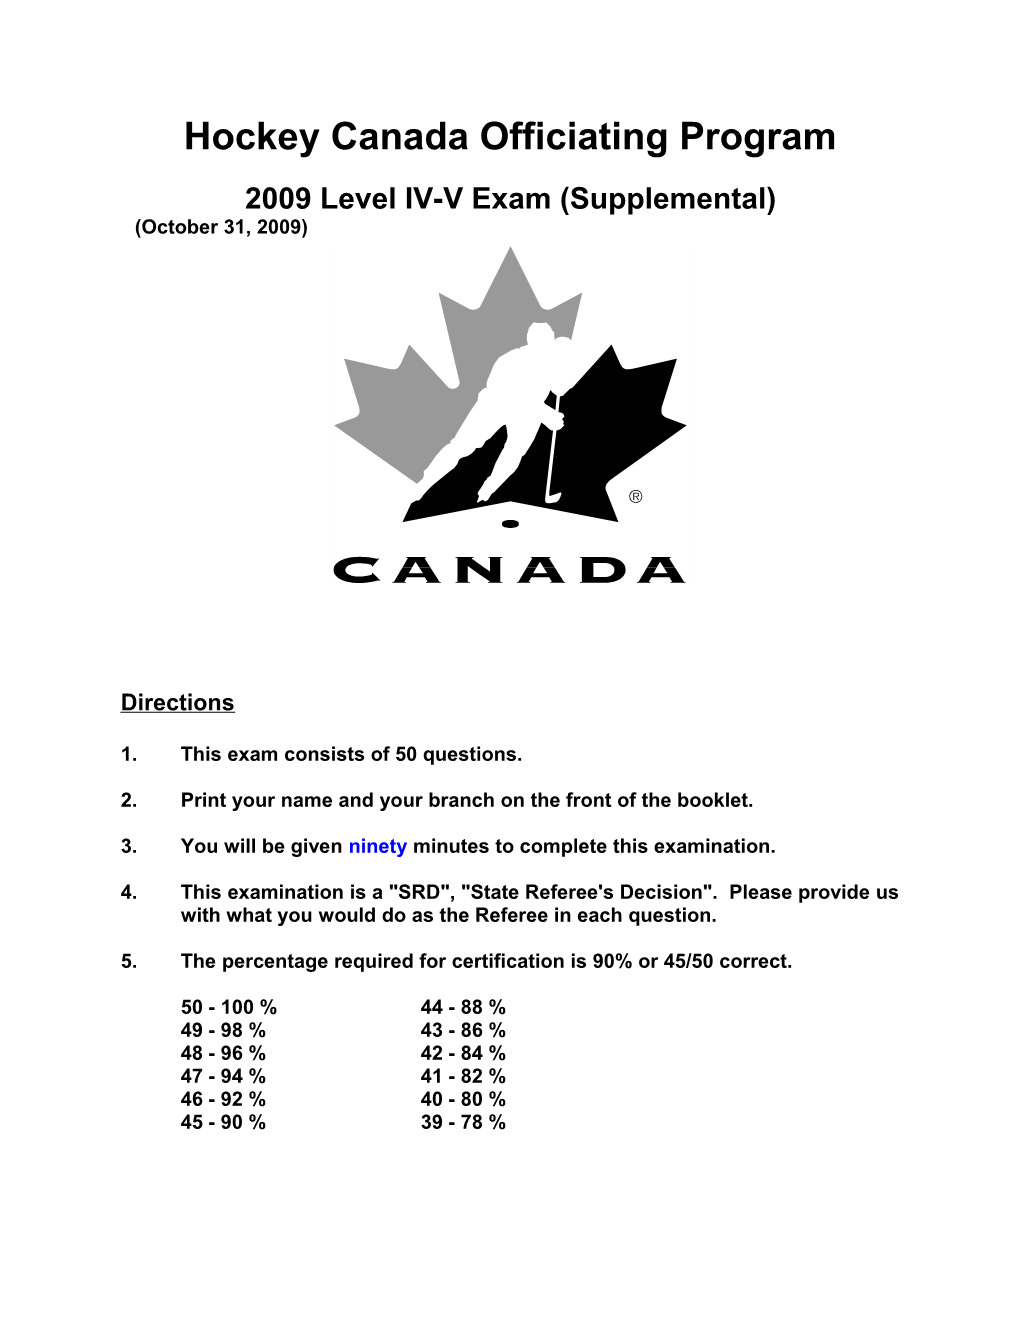 2009 Level IV-Vsupplemental Exam